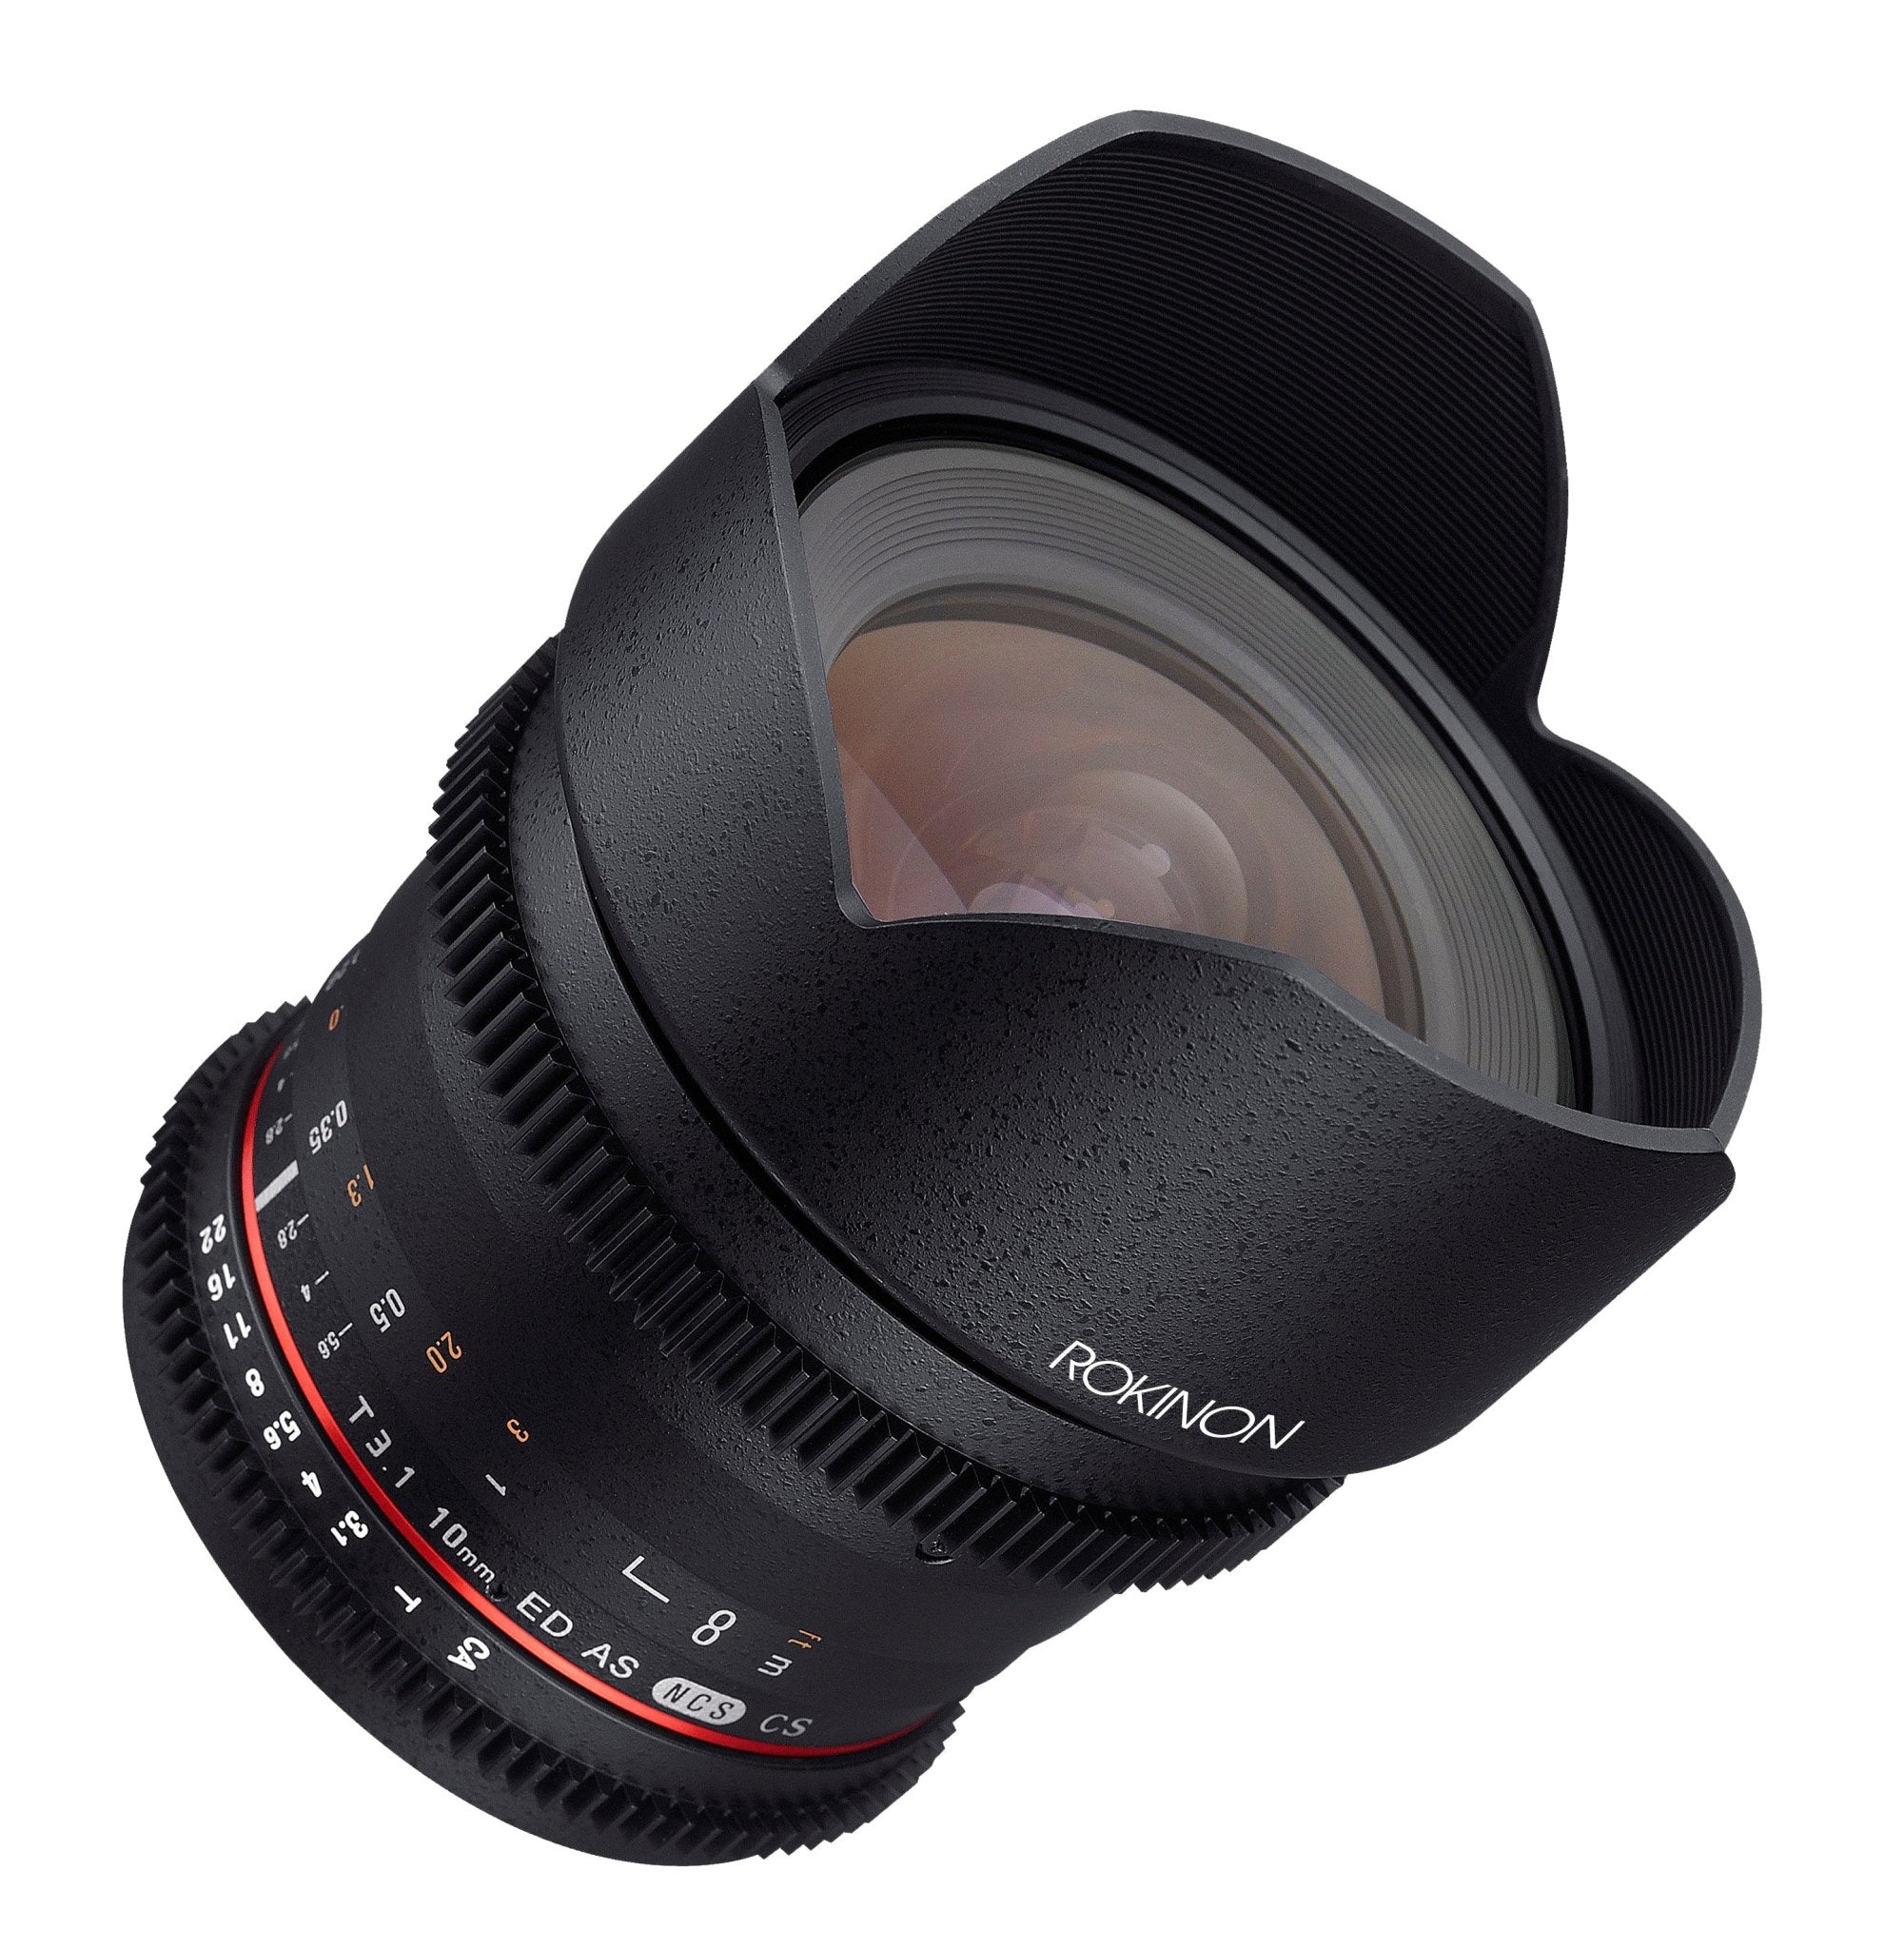 Rokinon Lens for Nikon F Mounts | Rokinon